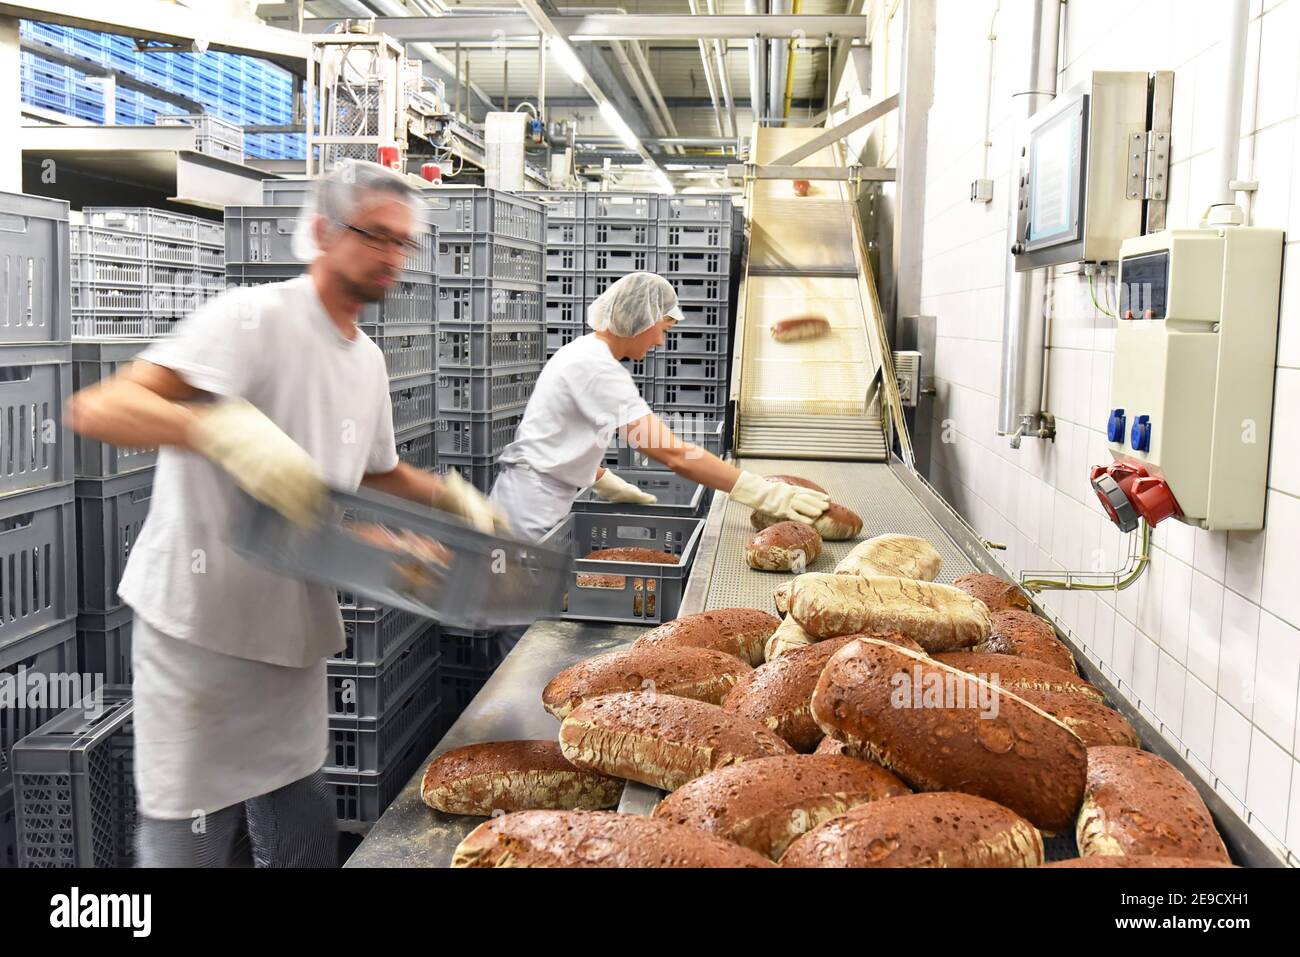 Arbeiter in einer Großbäckerei - Industrieproduktion von Backwaren auf einer Fließstrecke Stockfoto